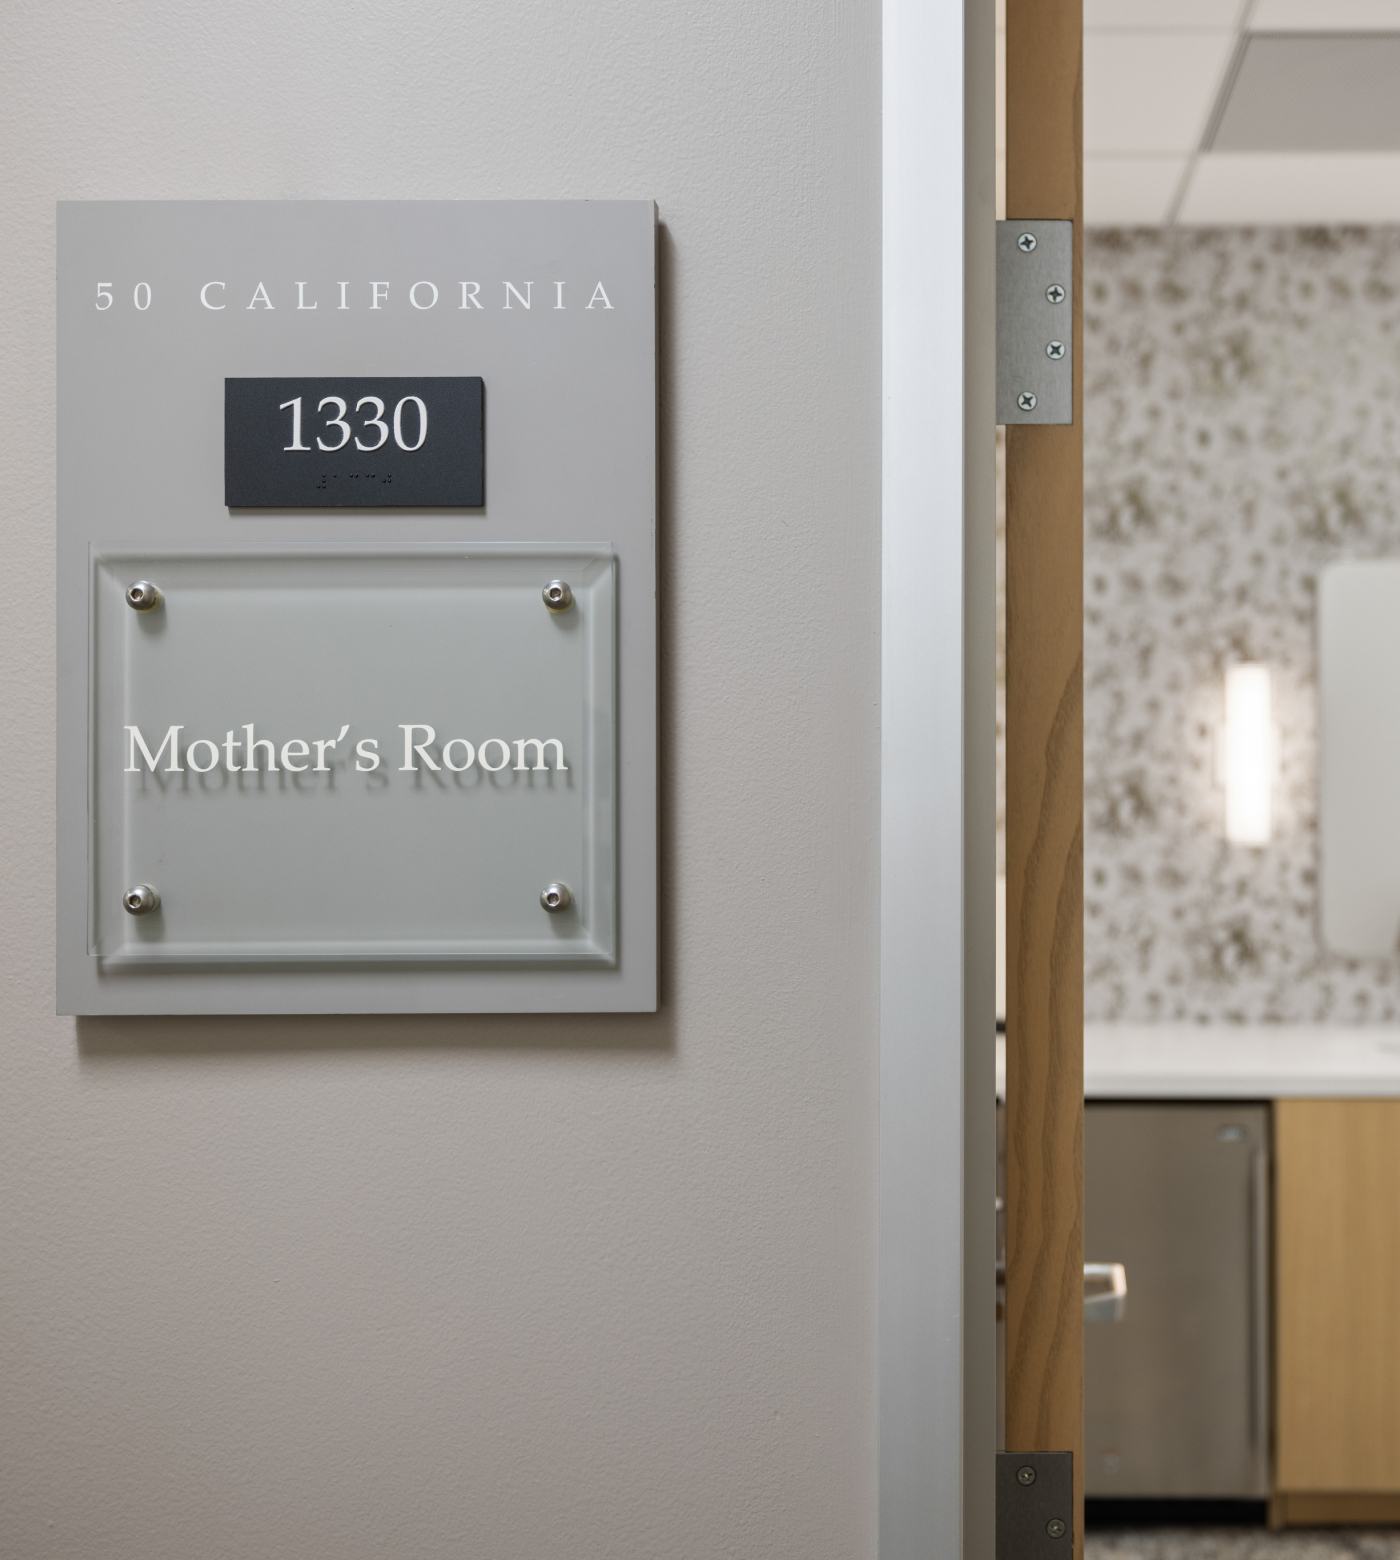 View of door placard identifying mothers room